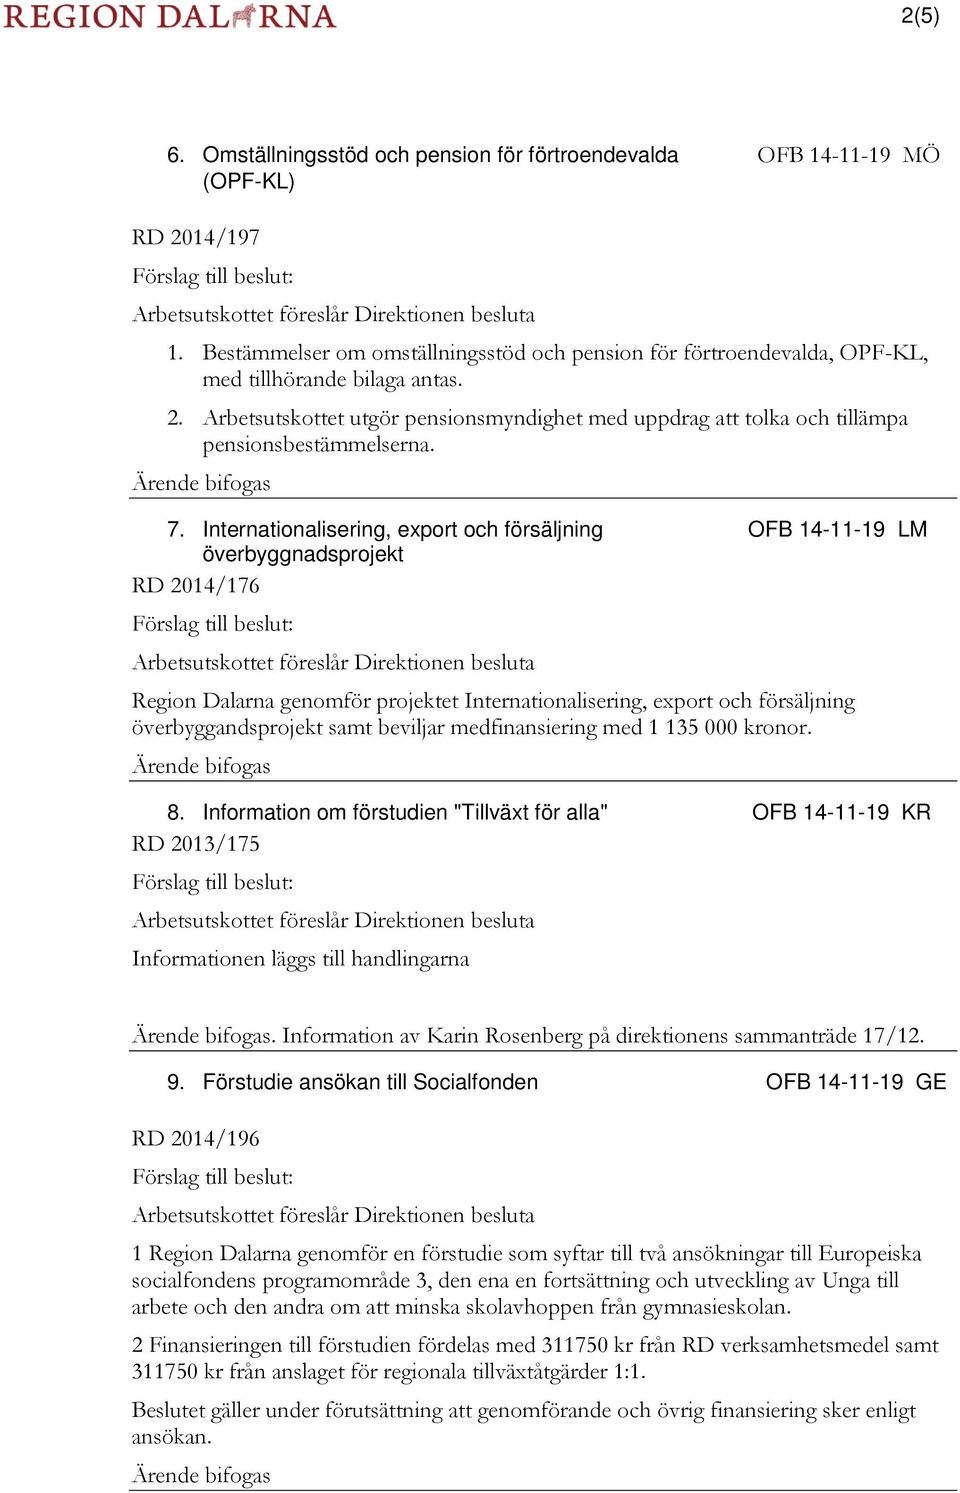 beviljar medfinansiering med 1 135 000 kronor. 8. Information om förstudien "Tillväxt för alla" OFB 14-11-19 KR 2013/175. Information av Karin Rosenberg på direktionens sammanträde 17/12. 9.